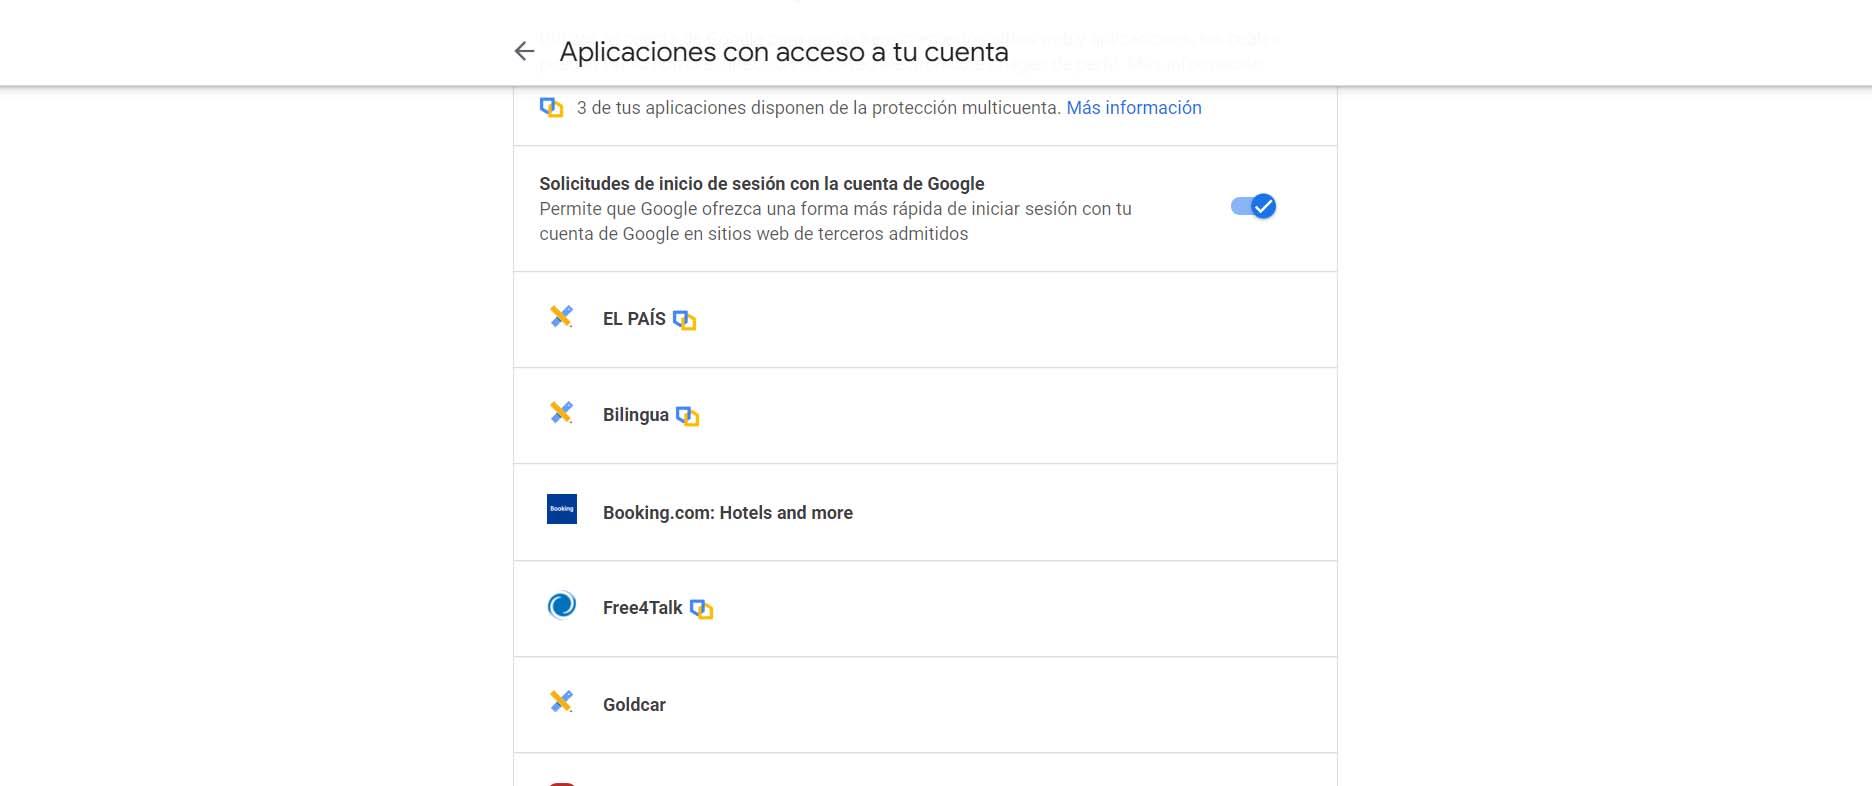 Aplicaciones con acceso a la cuenta de Google